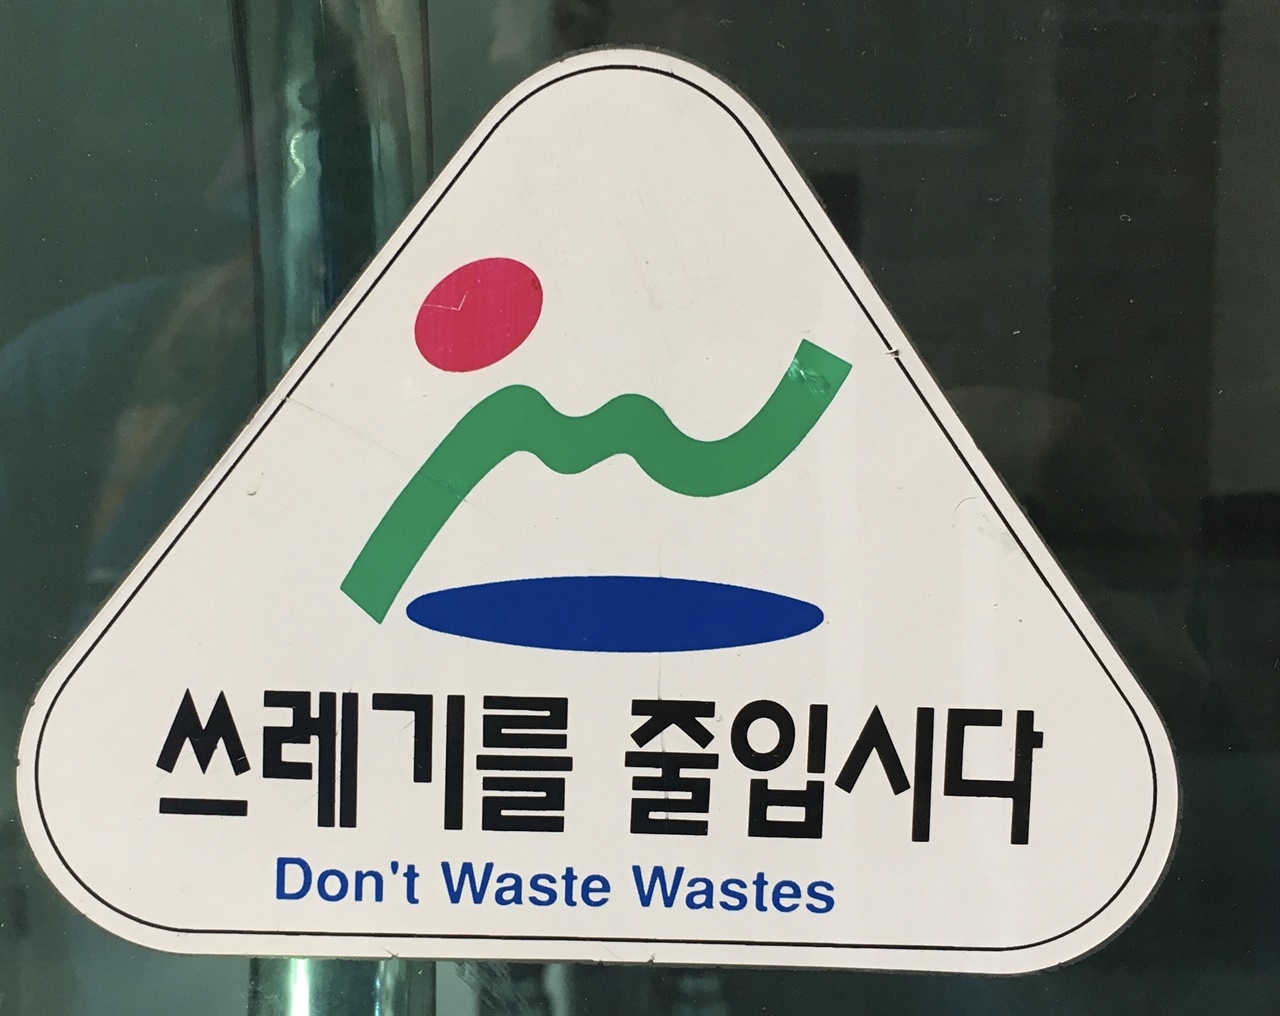 꽤 유명한 콩글리시 사례다. '쓰레기(들)를 낭비하면 안 된다'는 이상한 말이 어떻게 "쓰레기를 줄입시다"란 말로 변하는 건지 알 수가 없다.